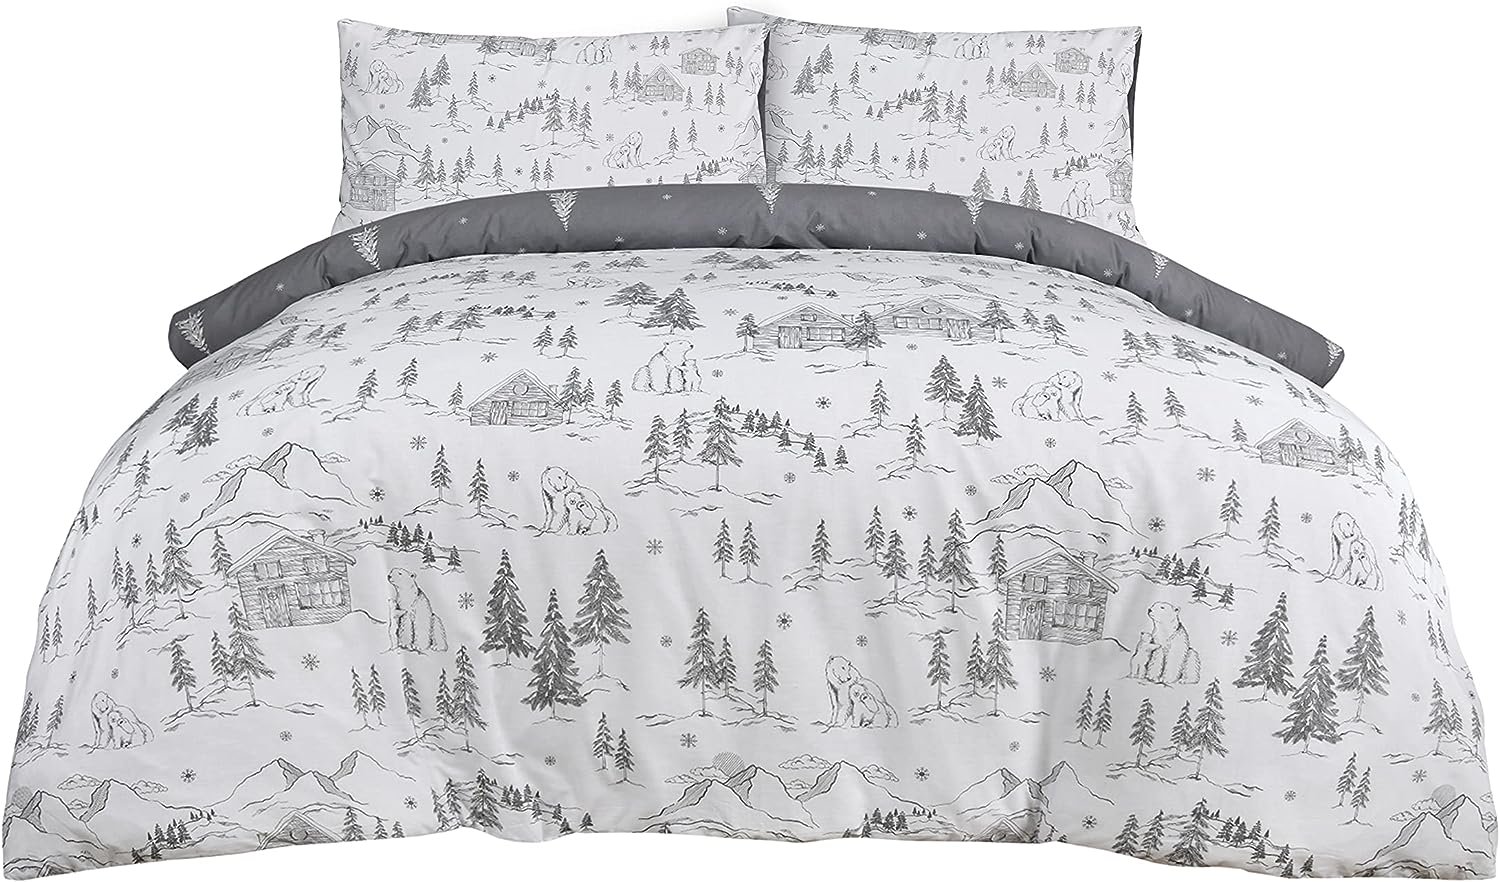 Sleepdown Polar Bears Winter Scene Snowflake White Grey Reversible Duvet Cover Quilt Bedding Set with Pillowcase Soft Easy Care Bed Linen – Single (135cm x 200cm) review